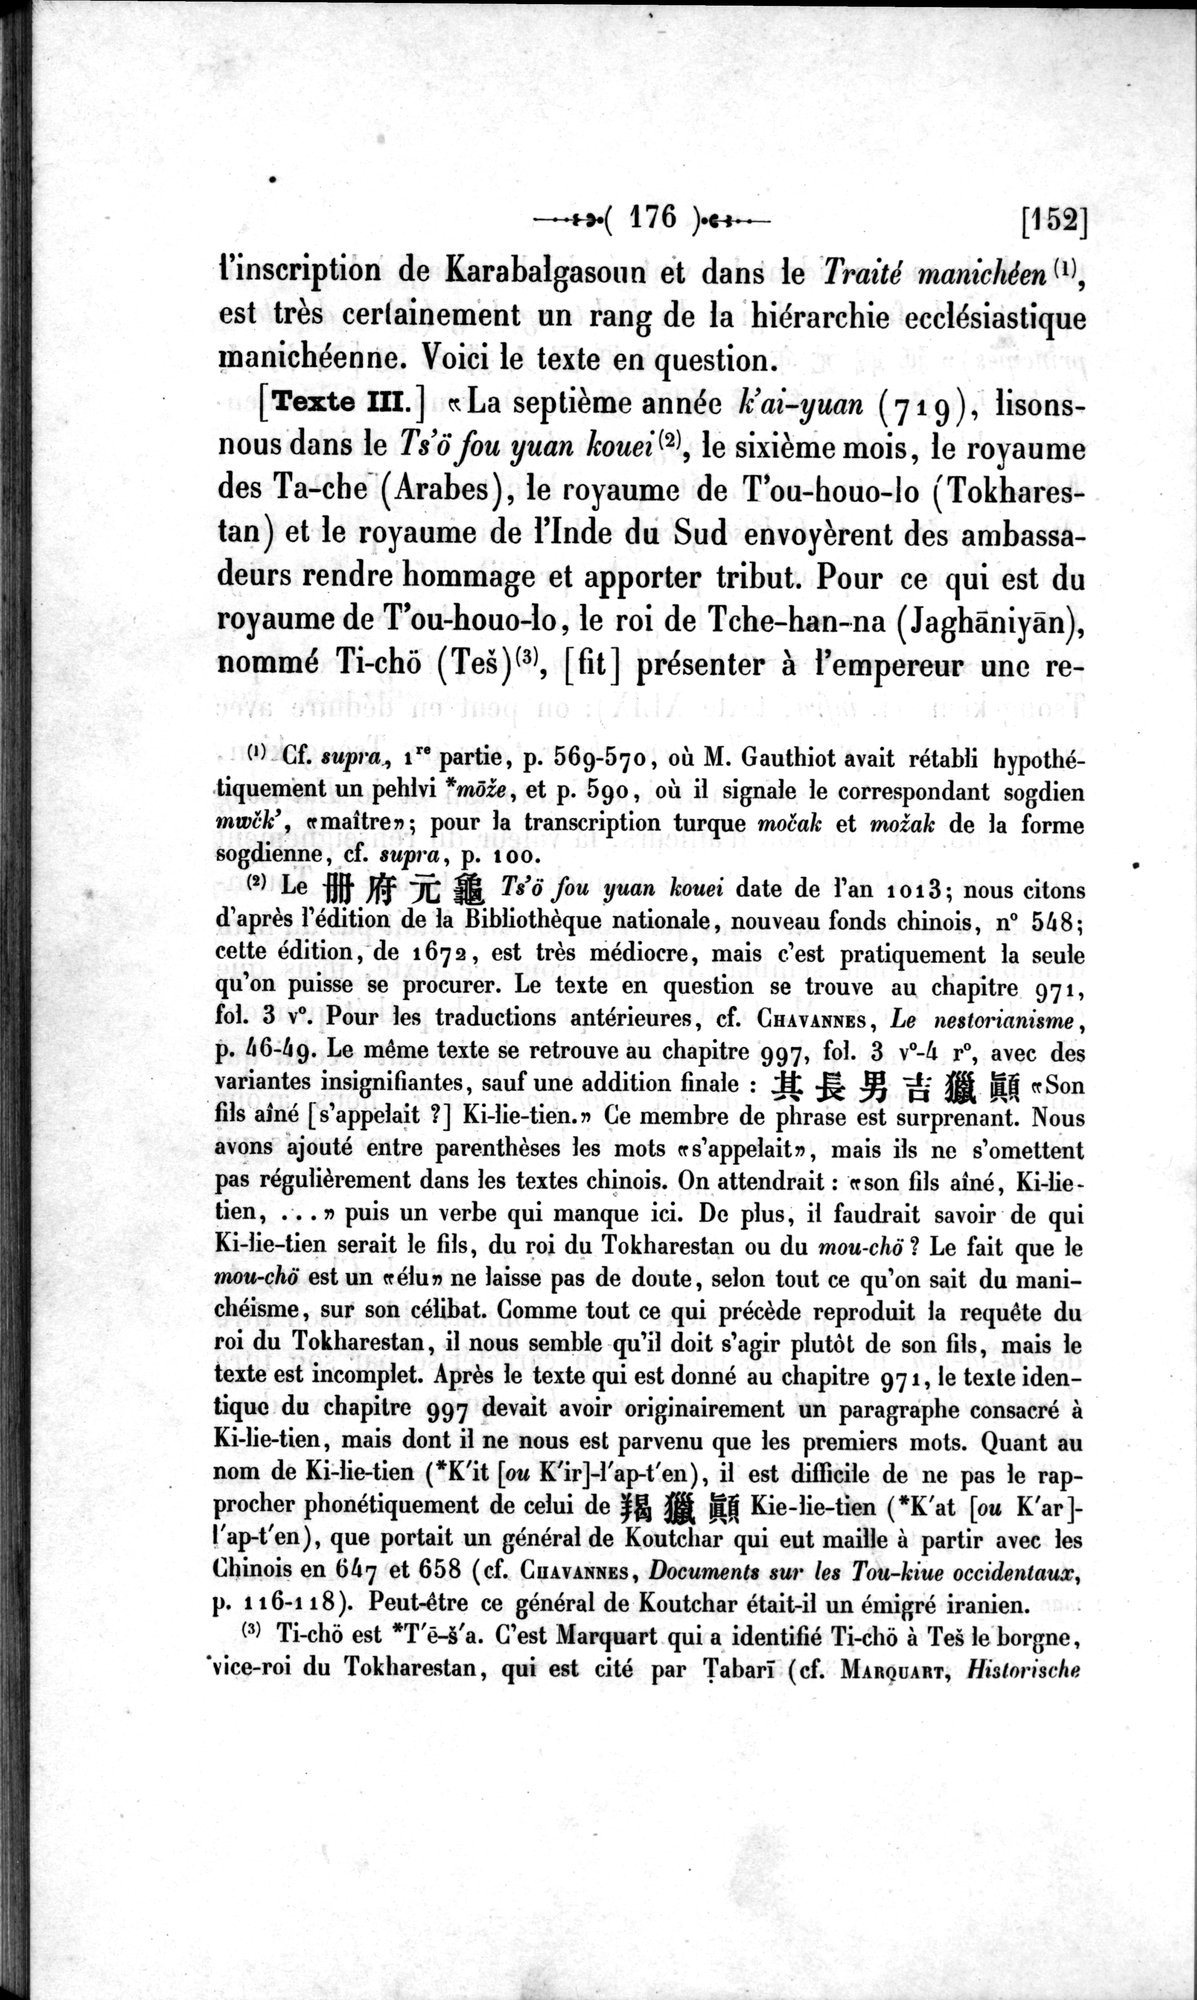 Un traité manichéen retrouvé en Chine : vol.1 / Page 186 (Grayscale High Resolution Image)